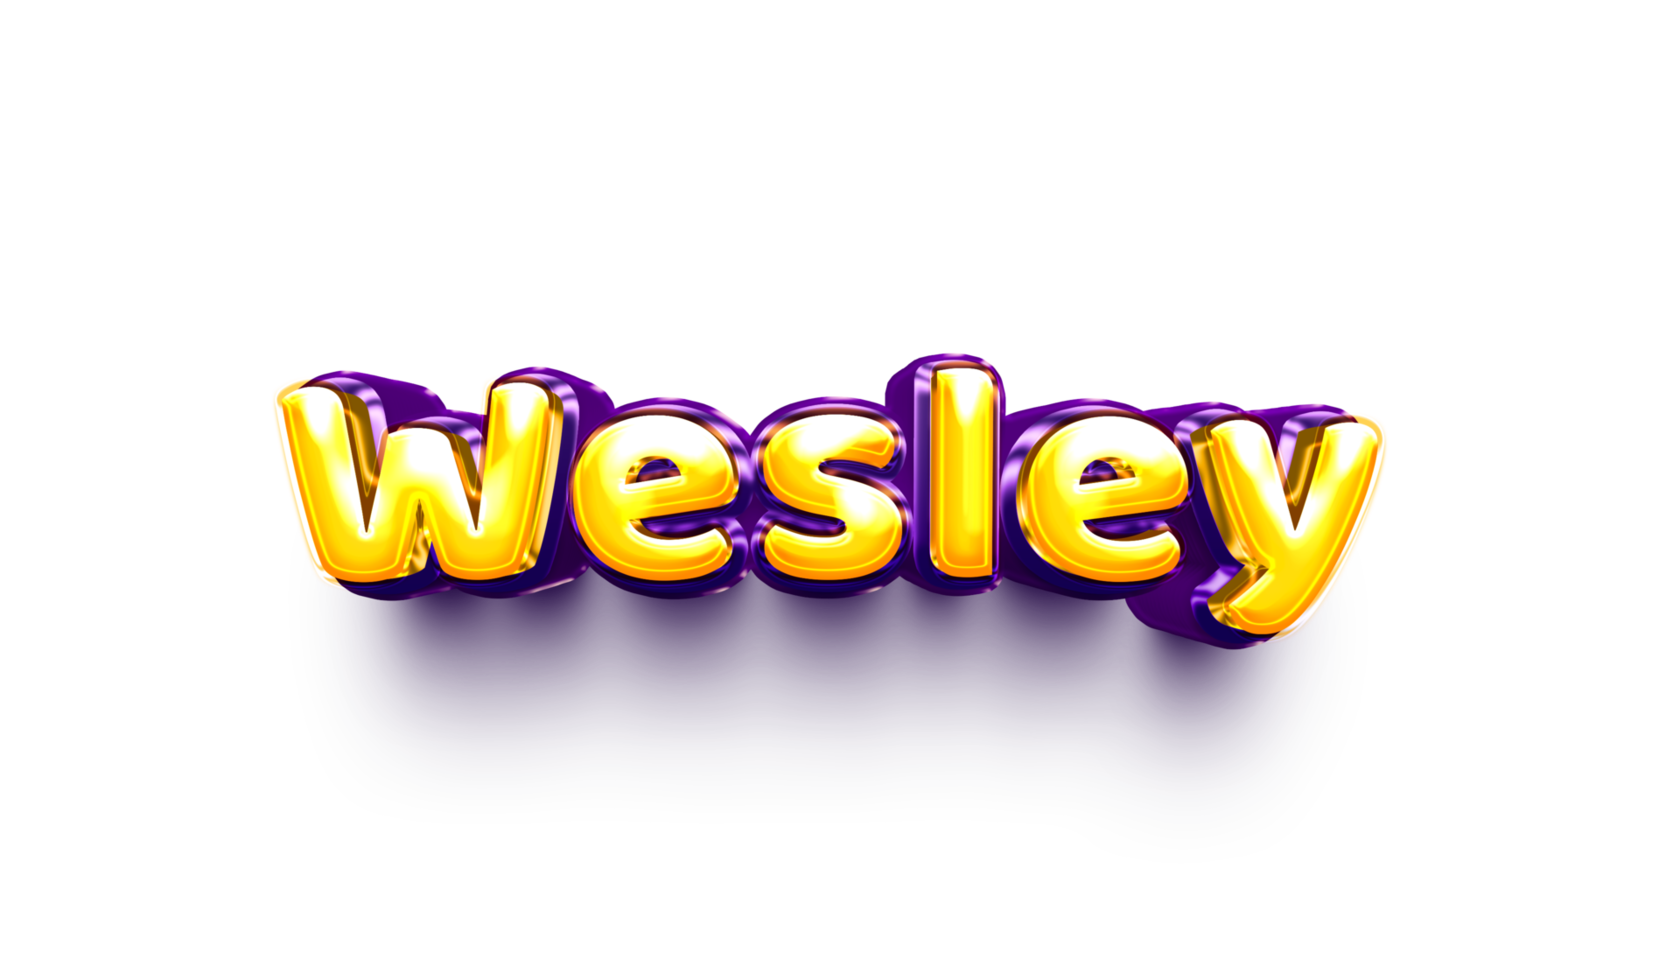 namen van jongens Engels helium ballon glimmend viering sticker 3d opgeblazen wesley wesley png